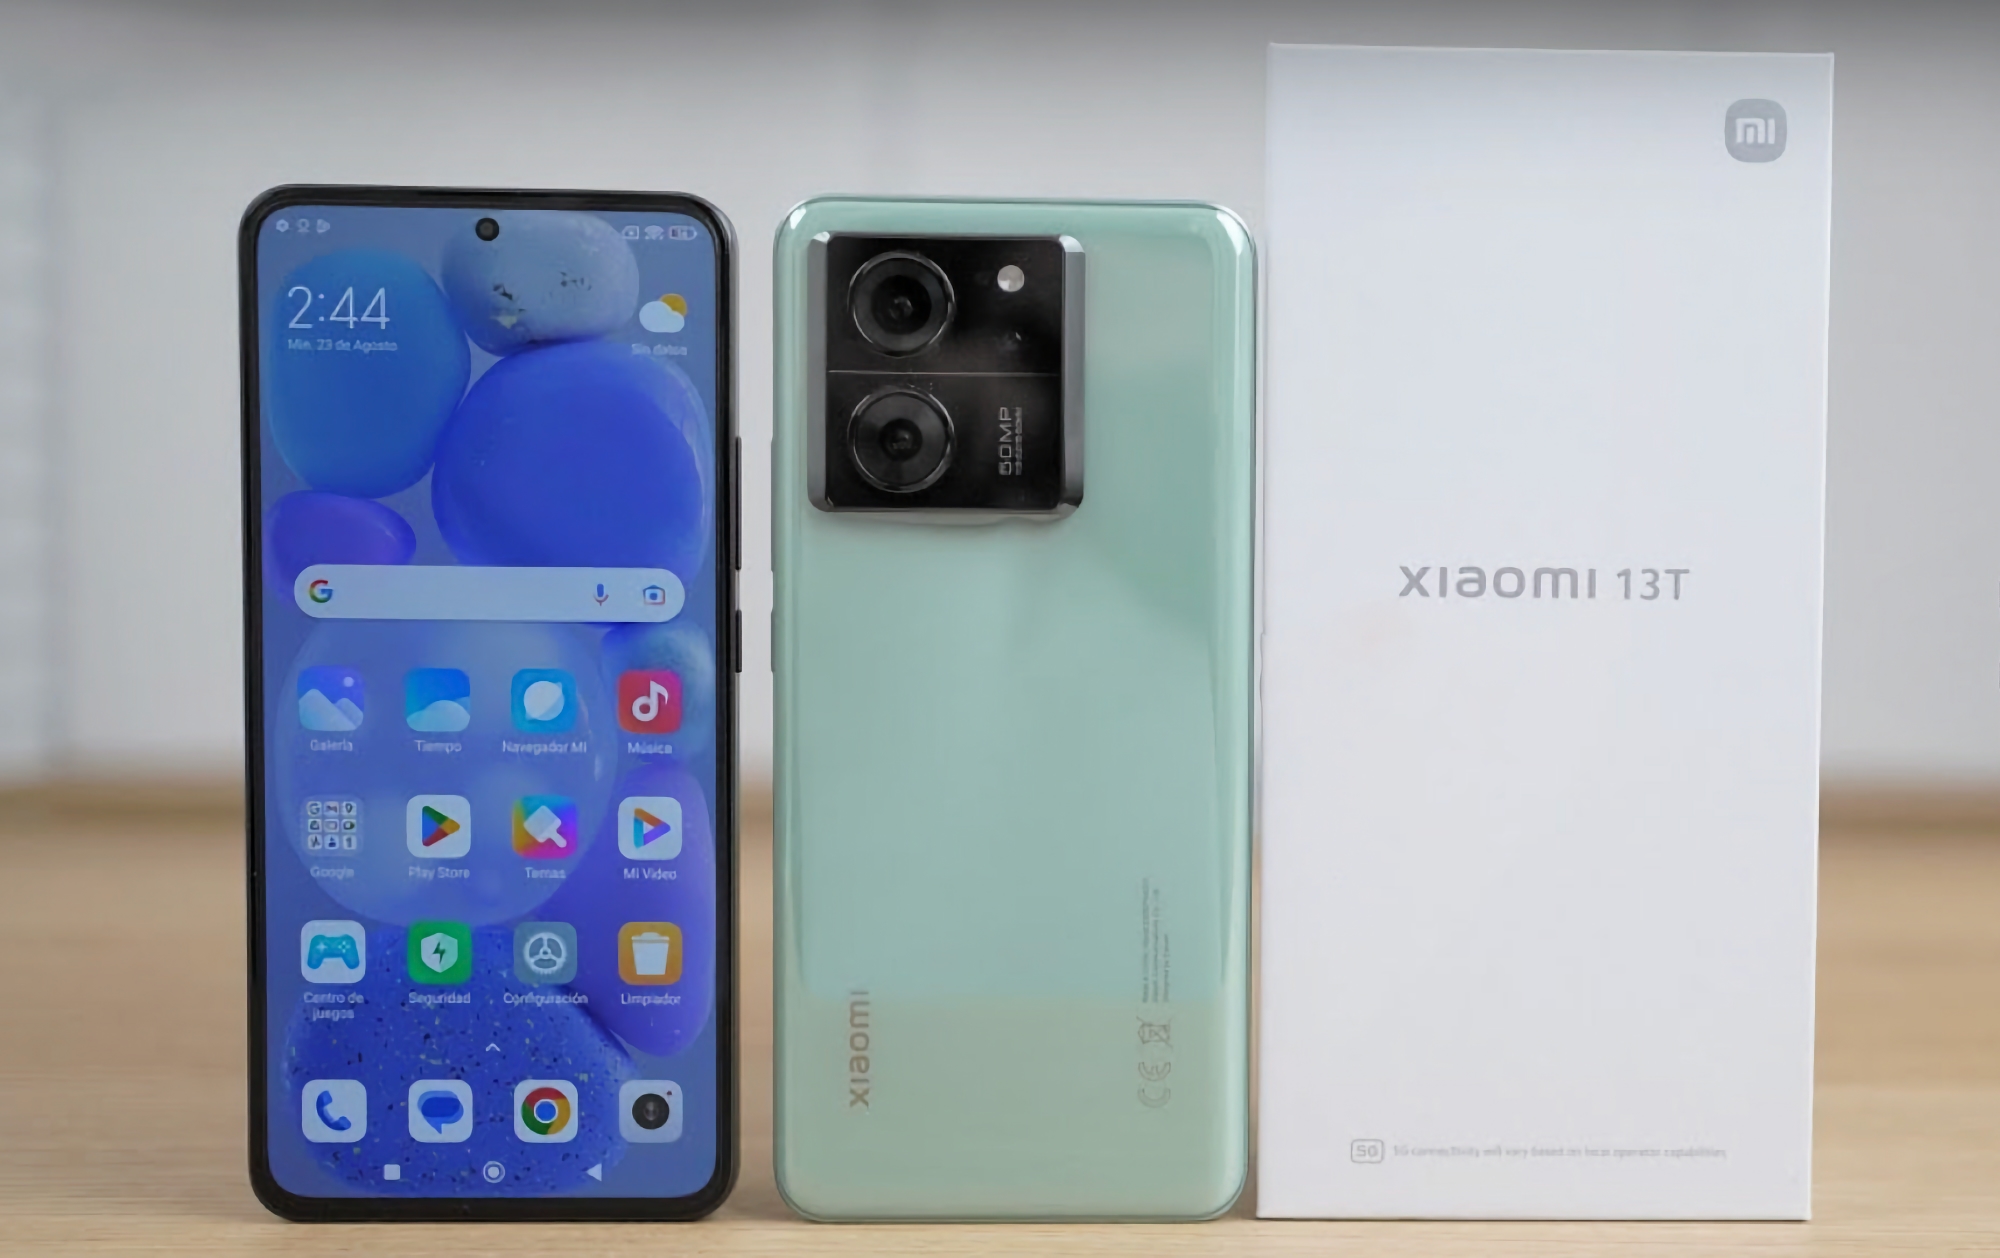 W serwisie YouTube pojawił się film z unboxingu niezapowiedzianego jeszcze smartfona Xiaomi 13T